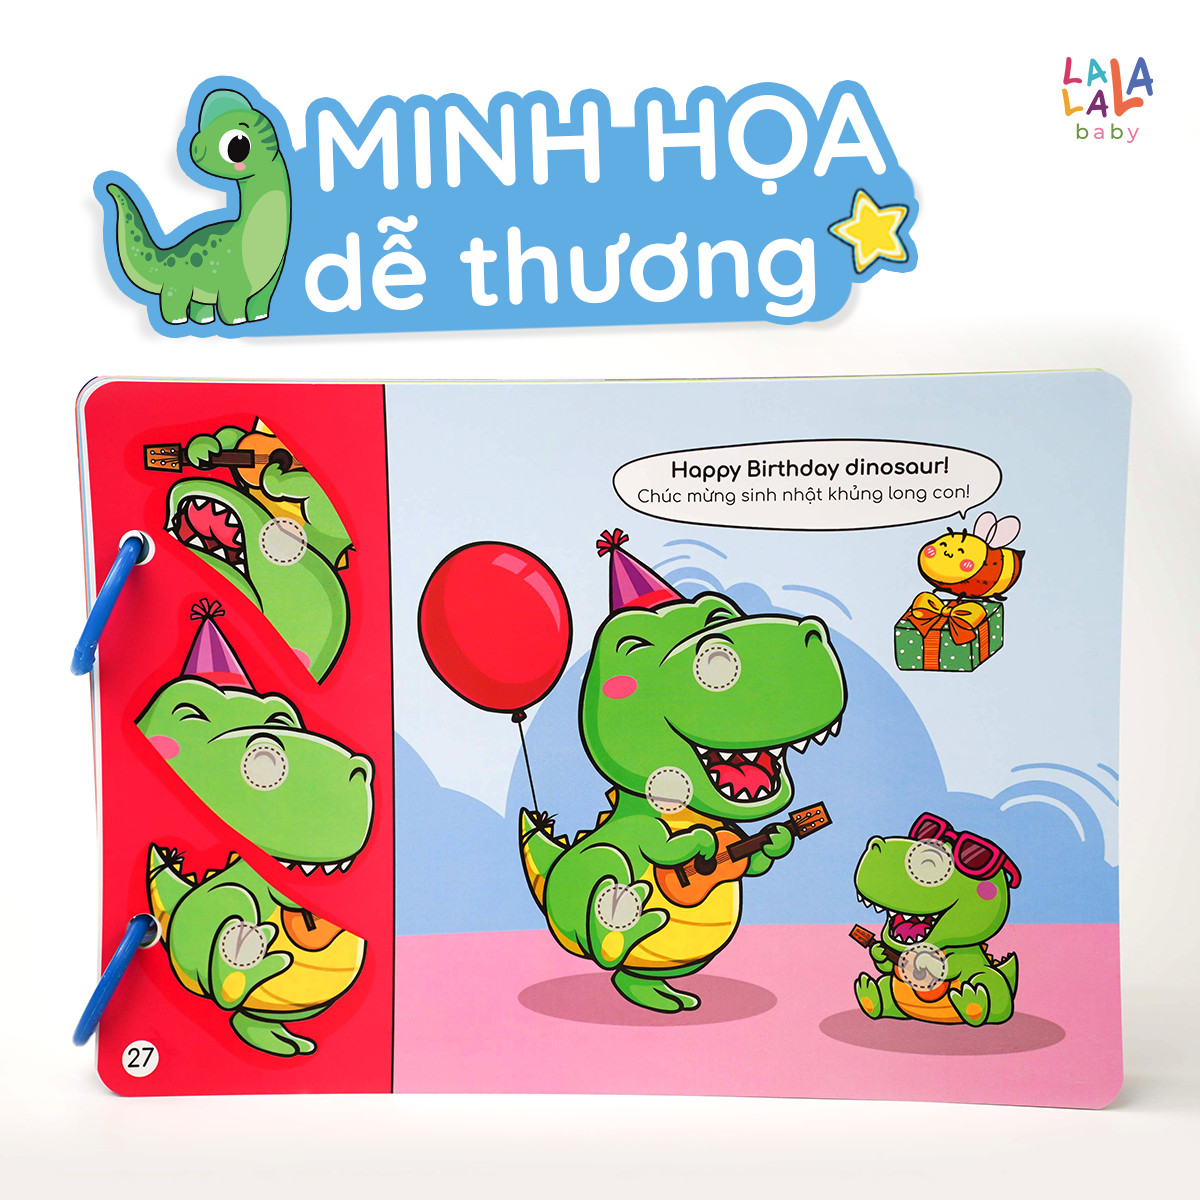 Học liệu bóc dán Busy Book cho bé Lalala Baby nhiều chủ đề đa dạng, song ngữ Anh Việt - Beezi Book